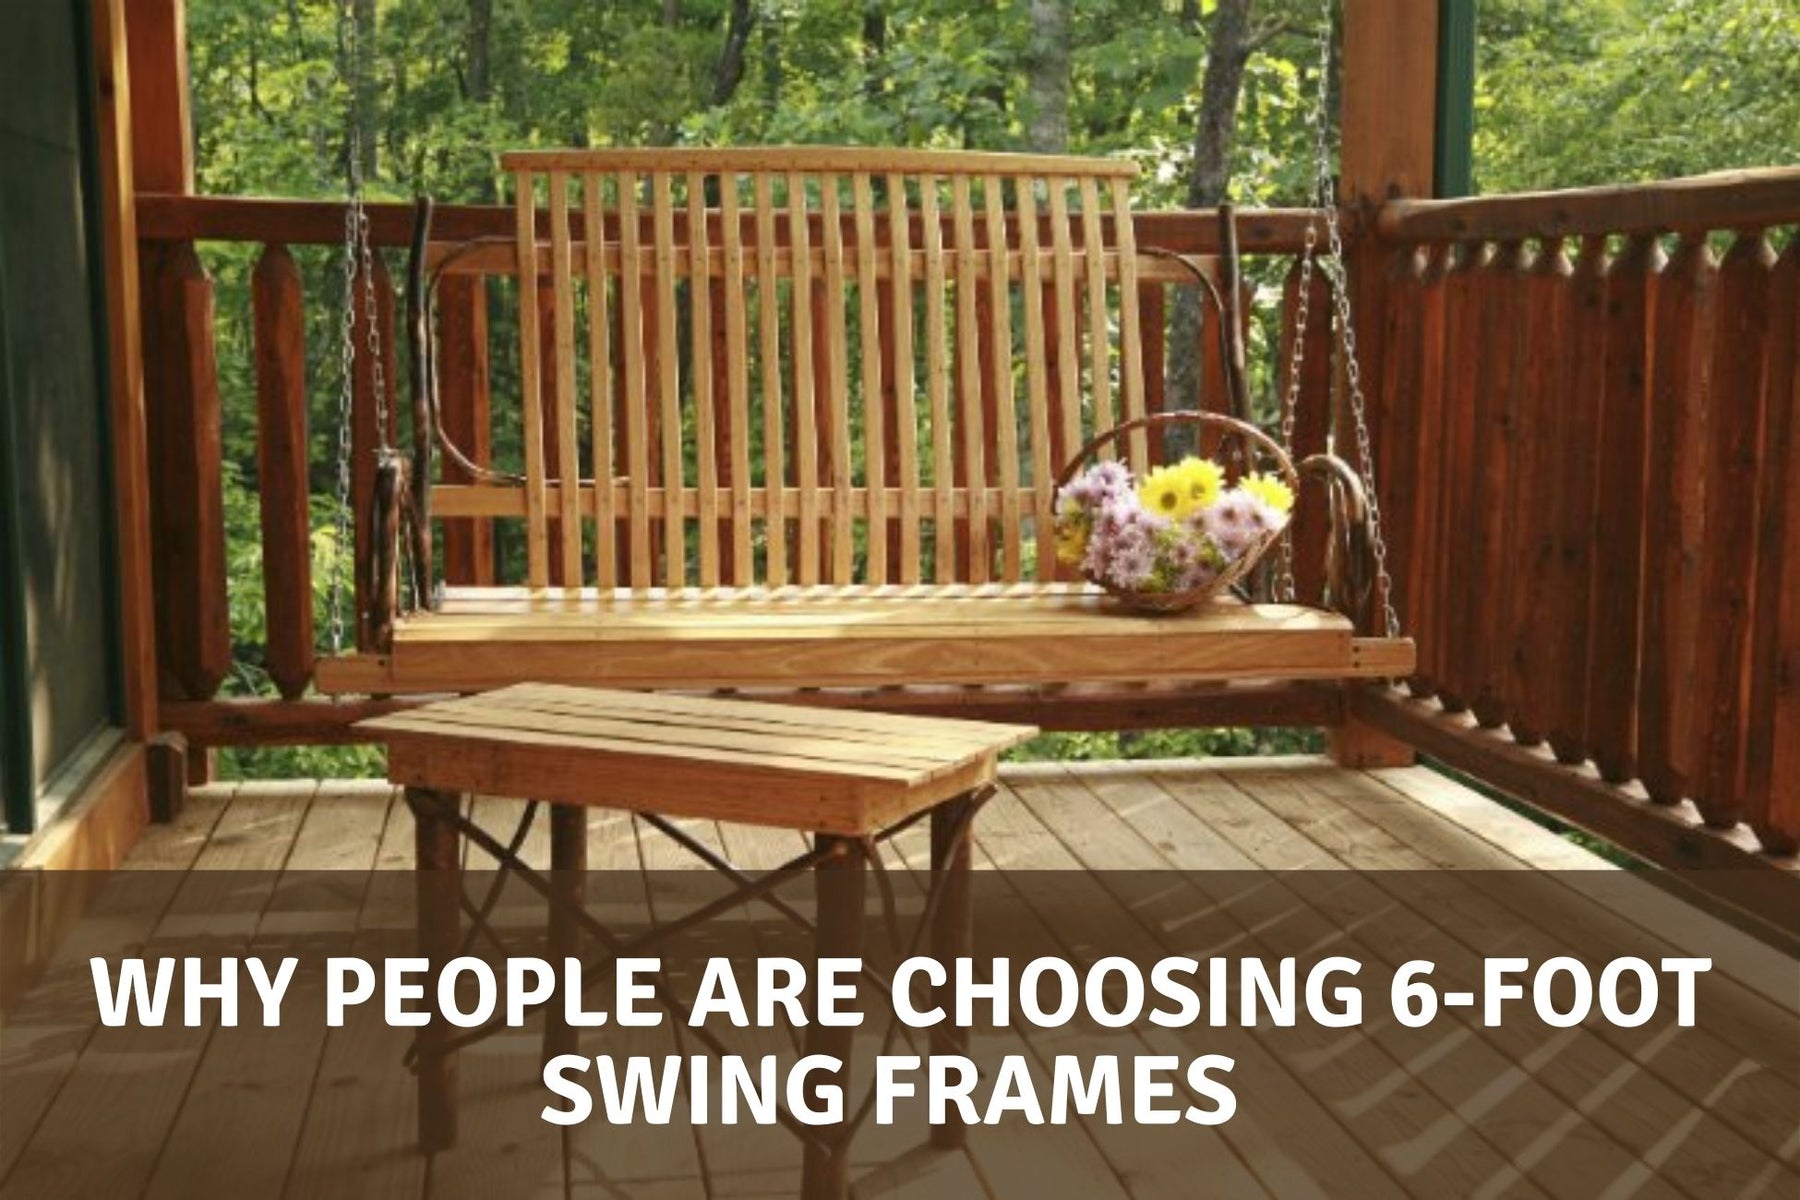 Why People are Choosing 6-Foot Swing Frames